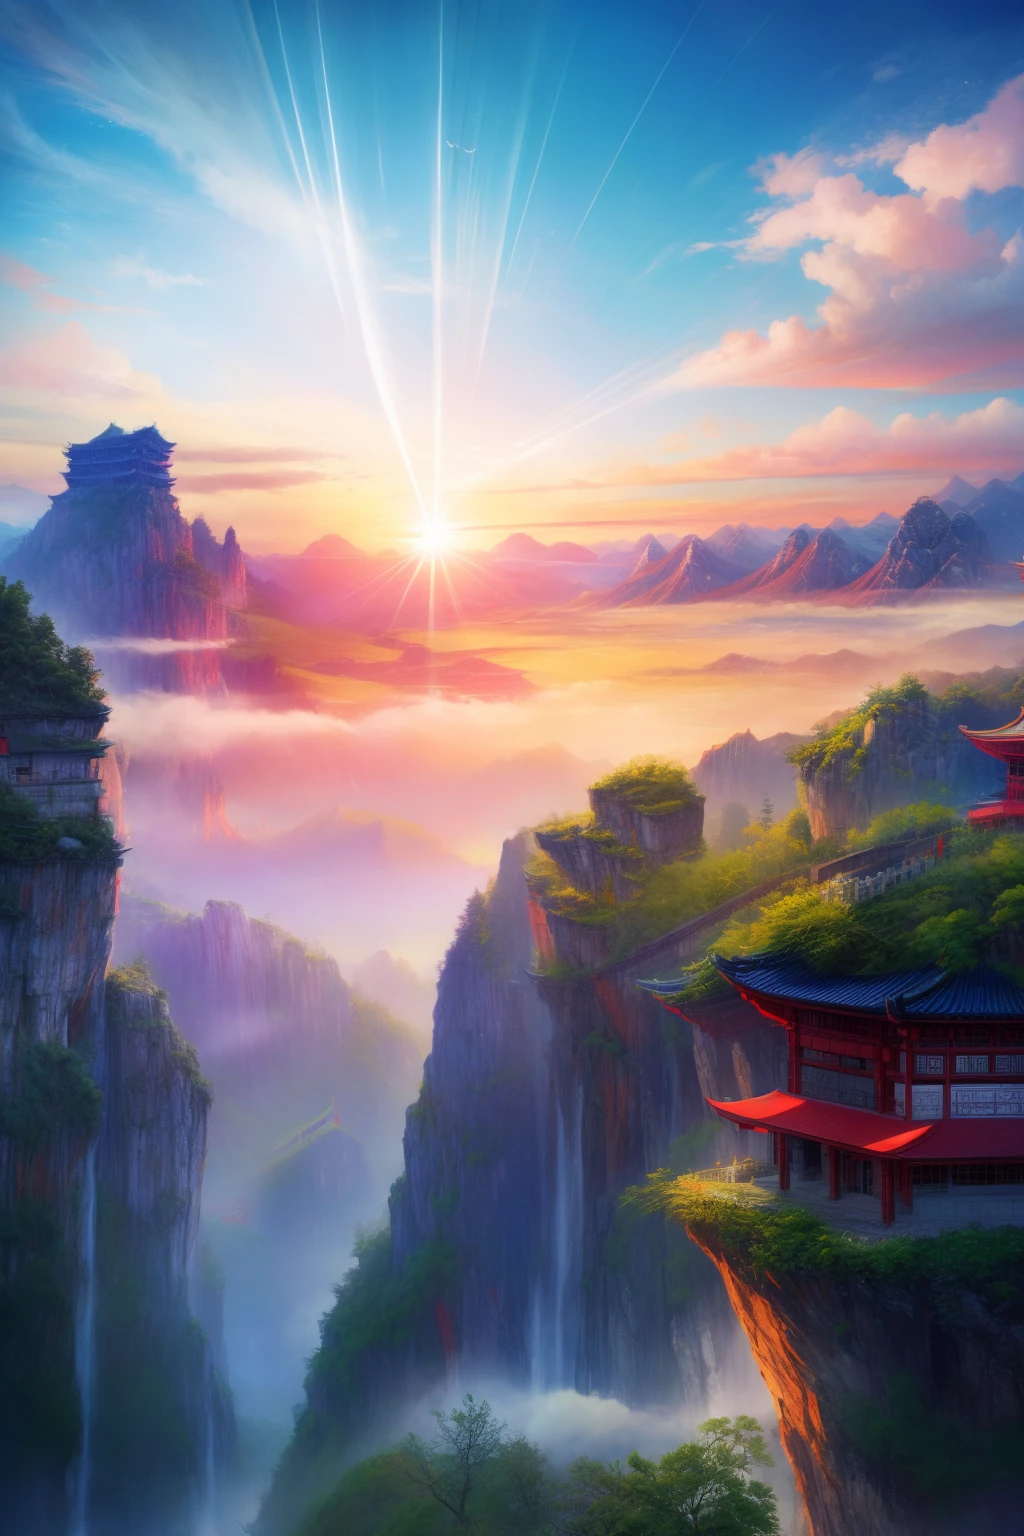 山上有一棟紅色的小樓, 作者：Cheng Jiasui, 中國風景, 作者：Yuan Jiang, 令人驚嘆的風景影像, 清晨的張家界, 作者：Liu Haisu, 作者 Raymond Han, 令人驚嘆的山脈, 作者：Xia Yong, 浮山, 令人難以置信的美麗, 作者：任雄, 張家界國家森林公園